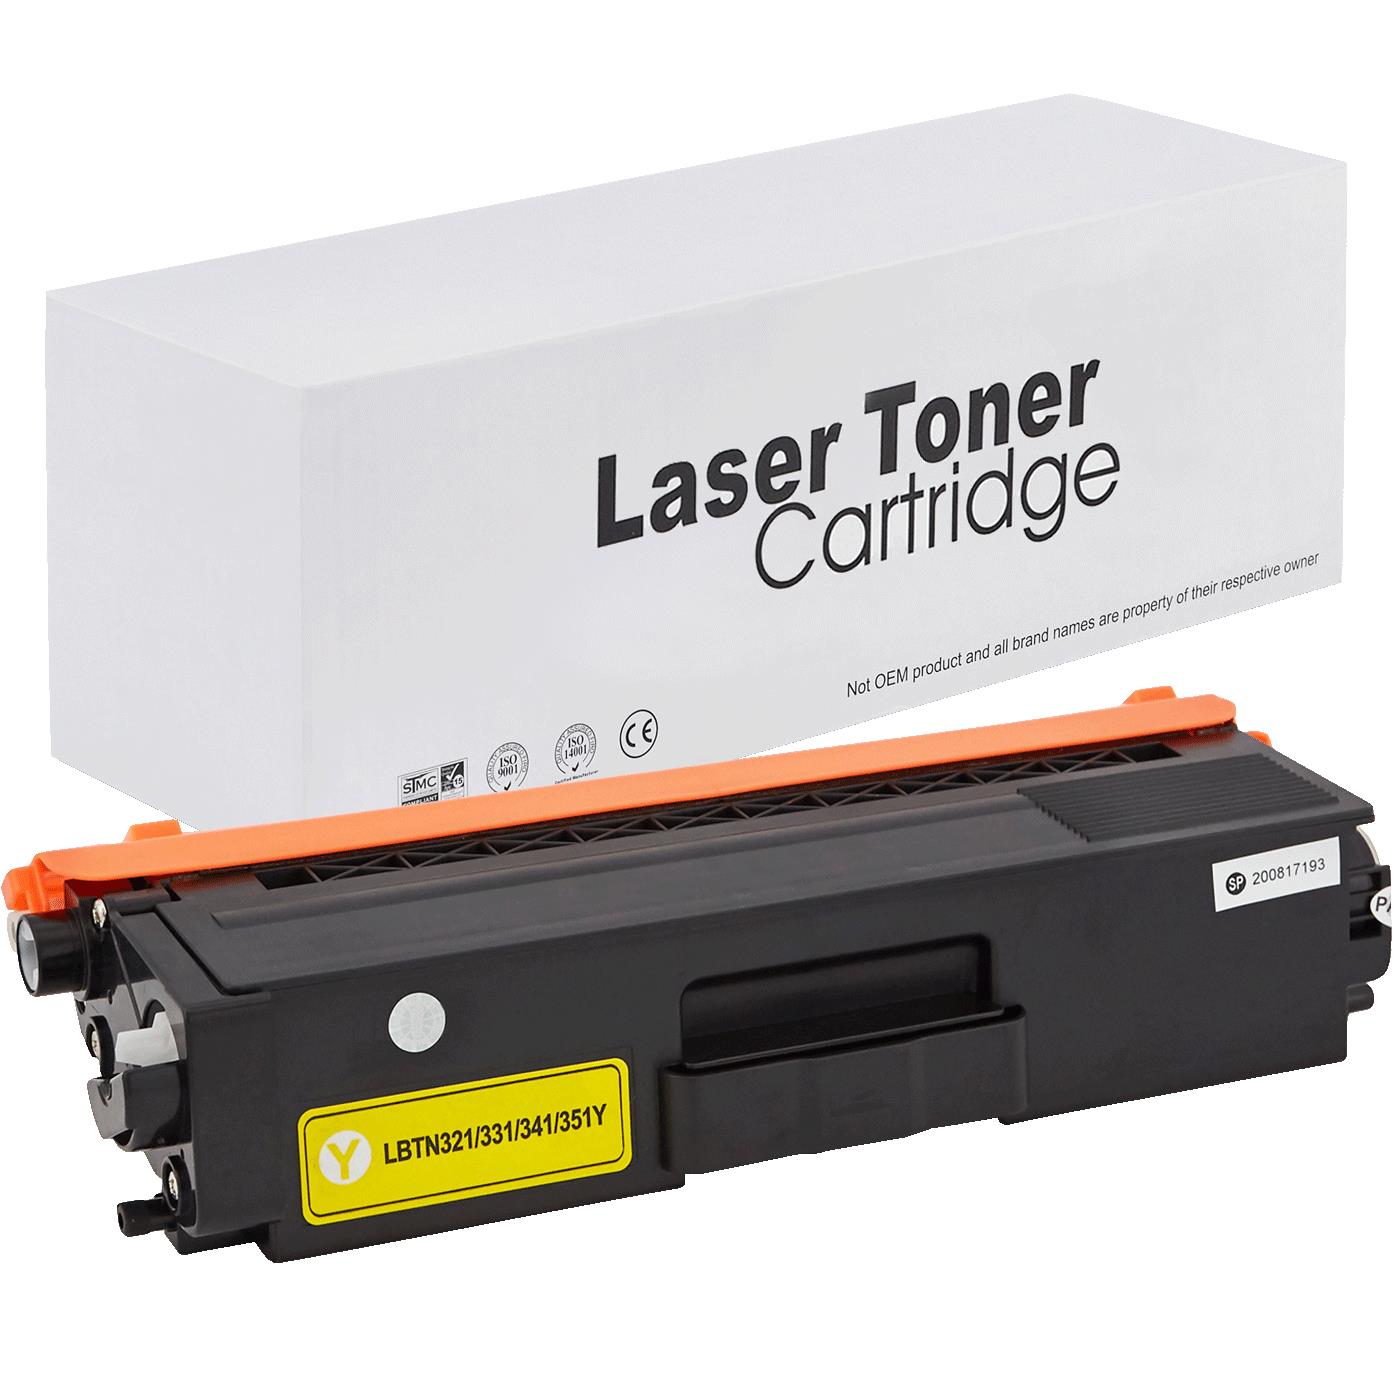 съвместима тонер касета за принтери и печатащи устройства на Brother MFC-L 8650 CDW Toner BR-321Y | TN321Y. Ниски цени, прецизно изпълнение, високо качество.